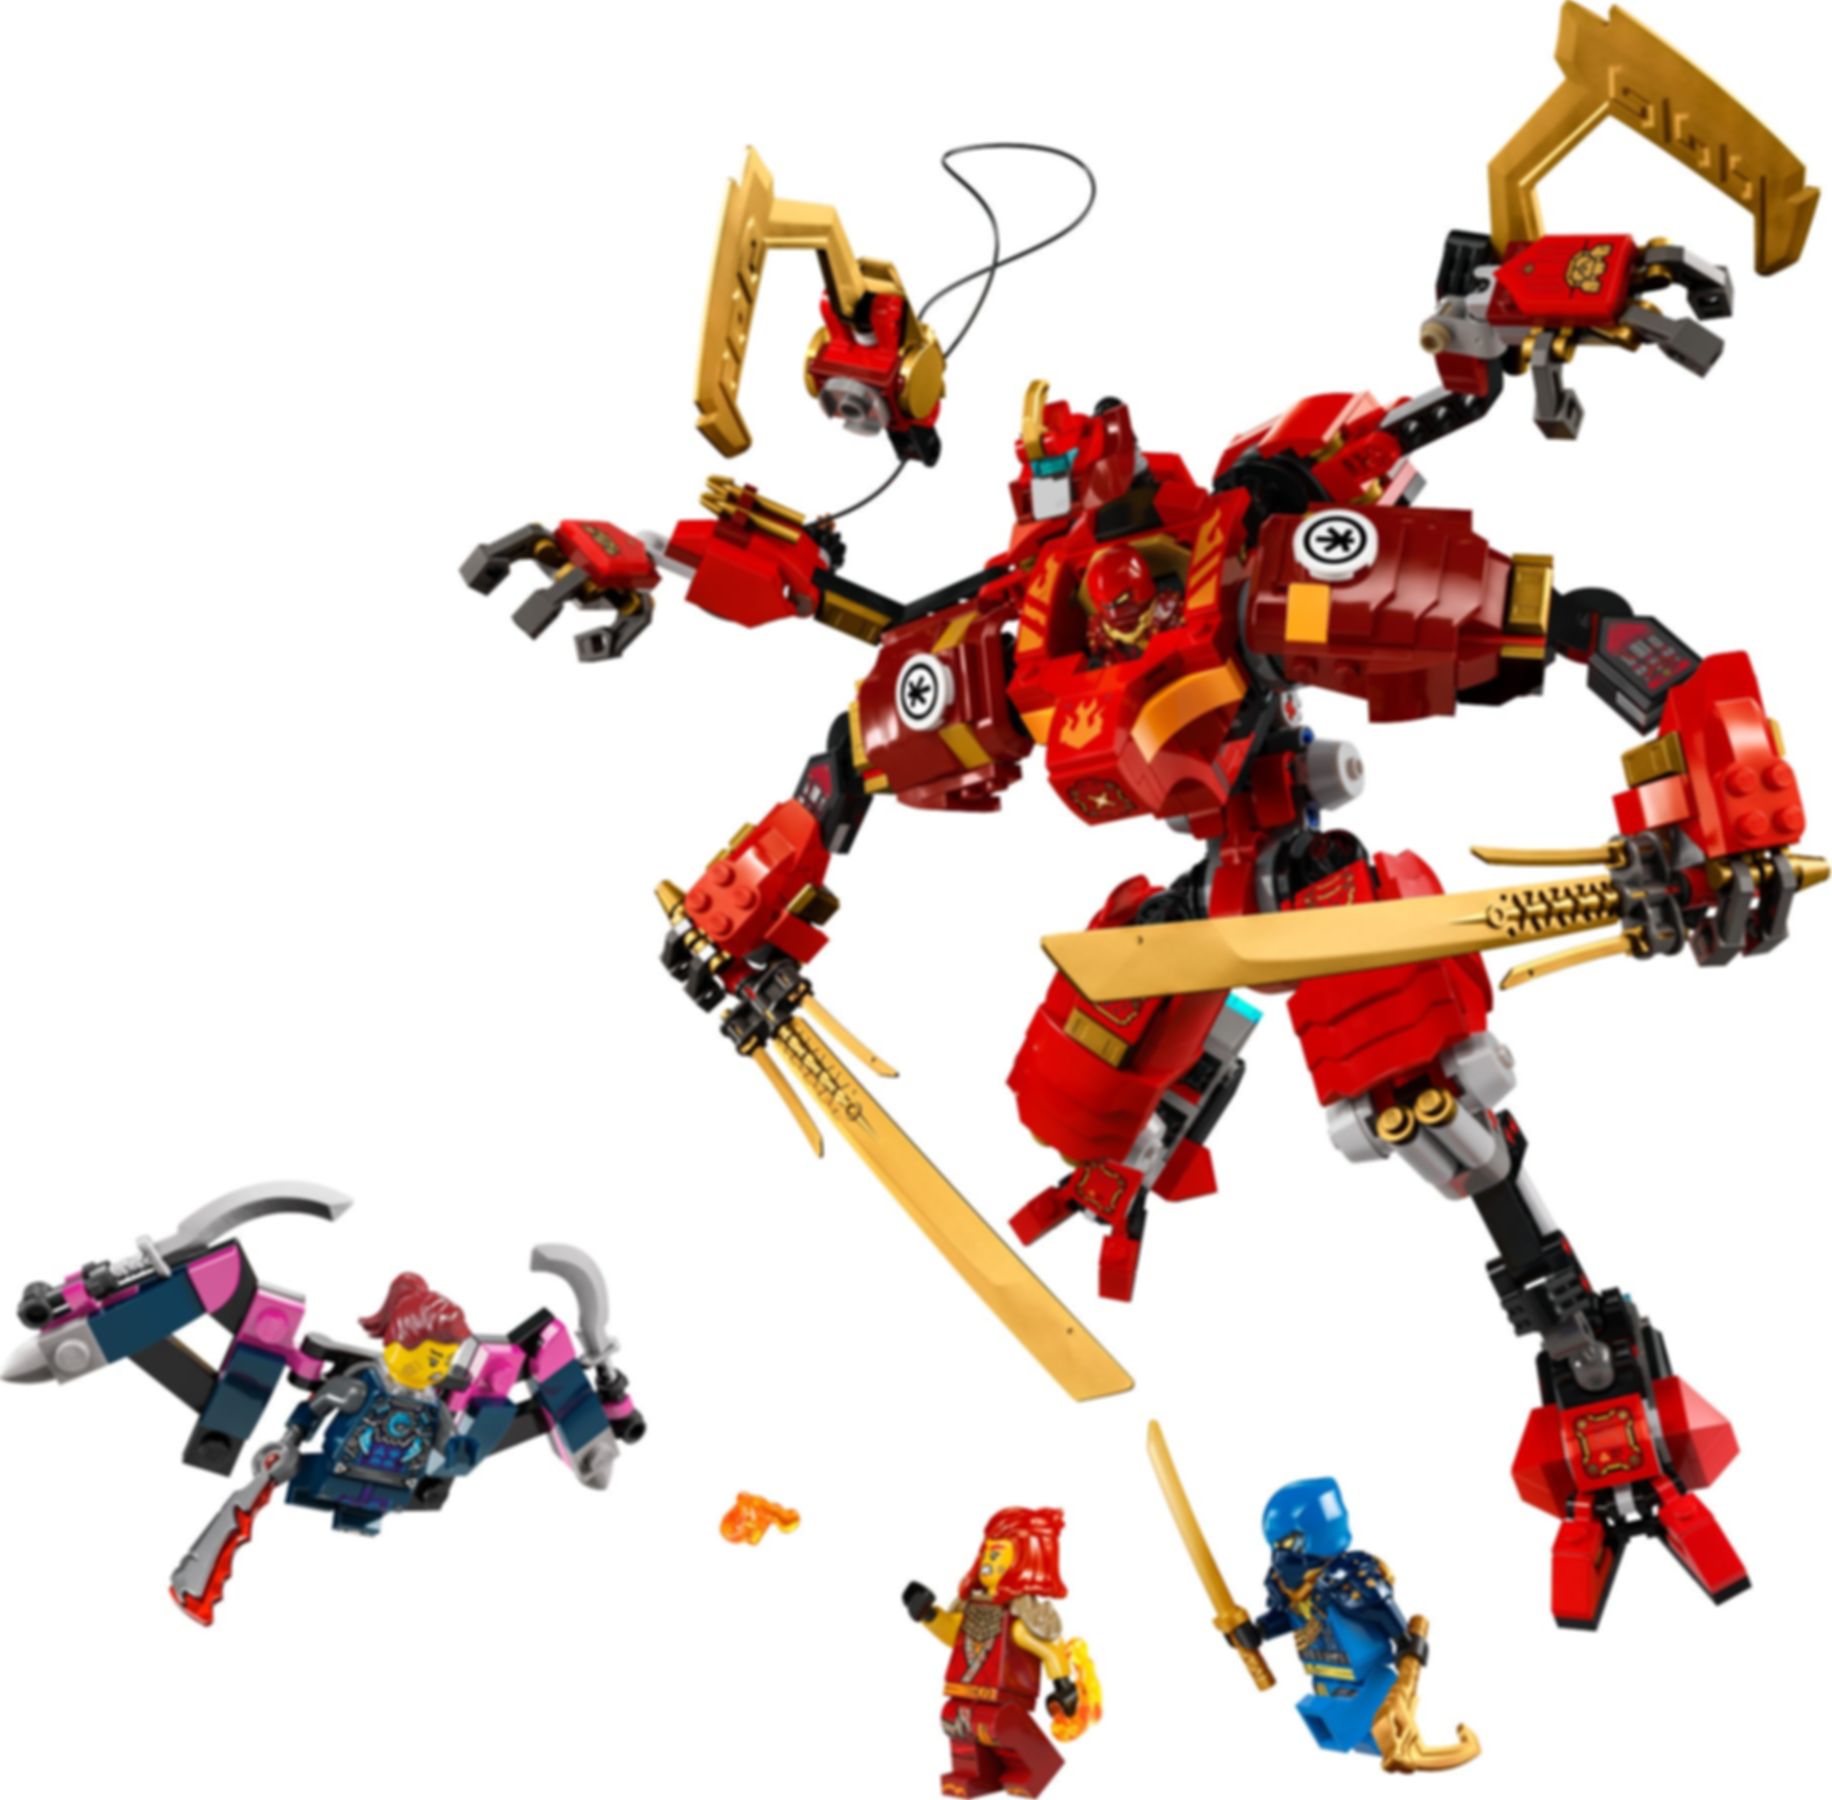 LEGO® Ninjago Kai's Ninja Climber Mech components